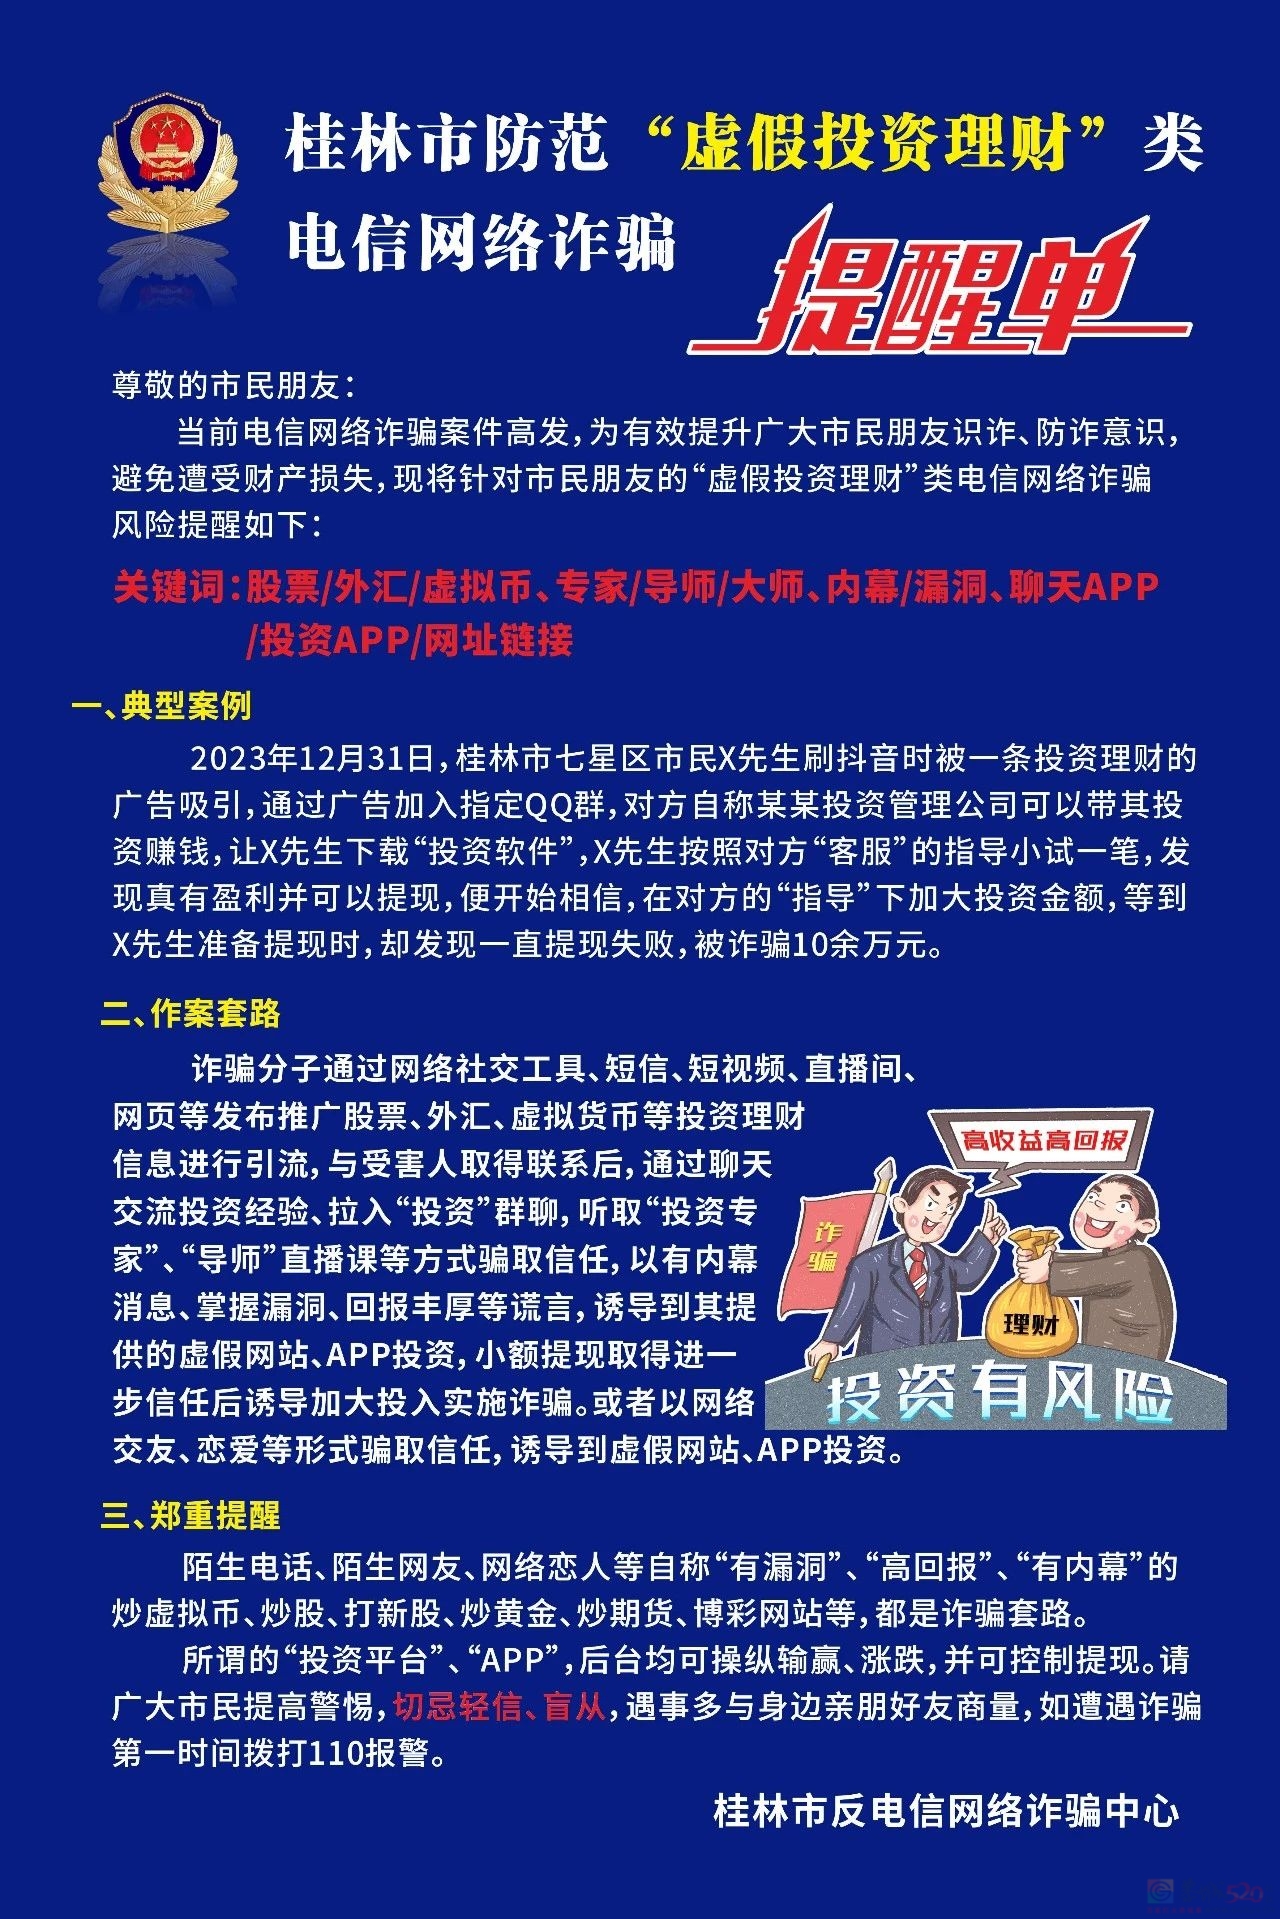 近期多人被骗！桂林警方紧急提醒397 / 作者:尹以为荣 / 帖子ID:313232